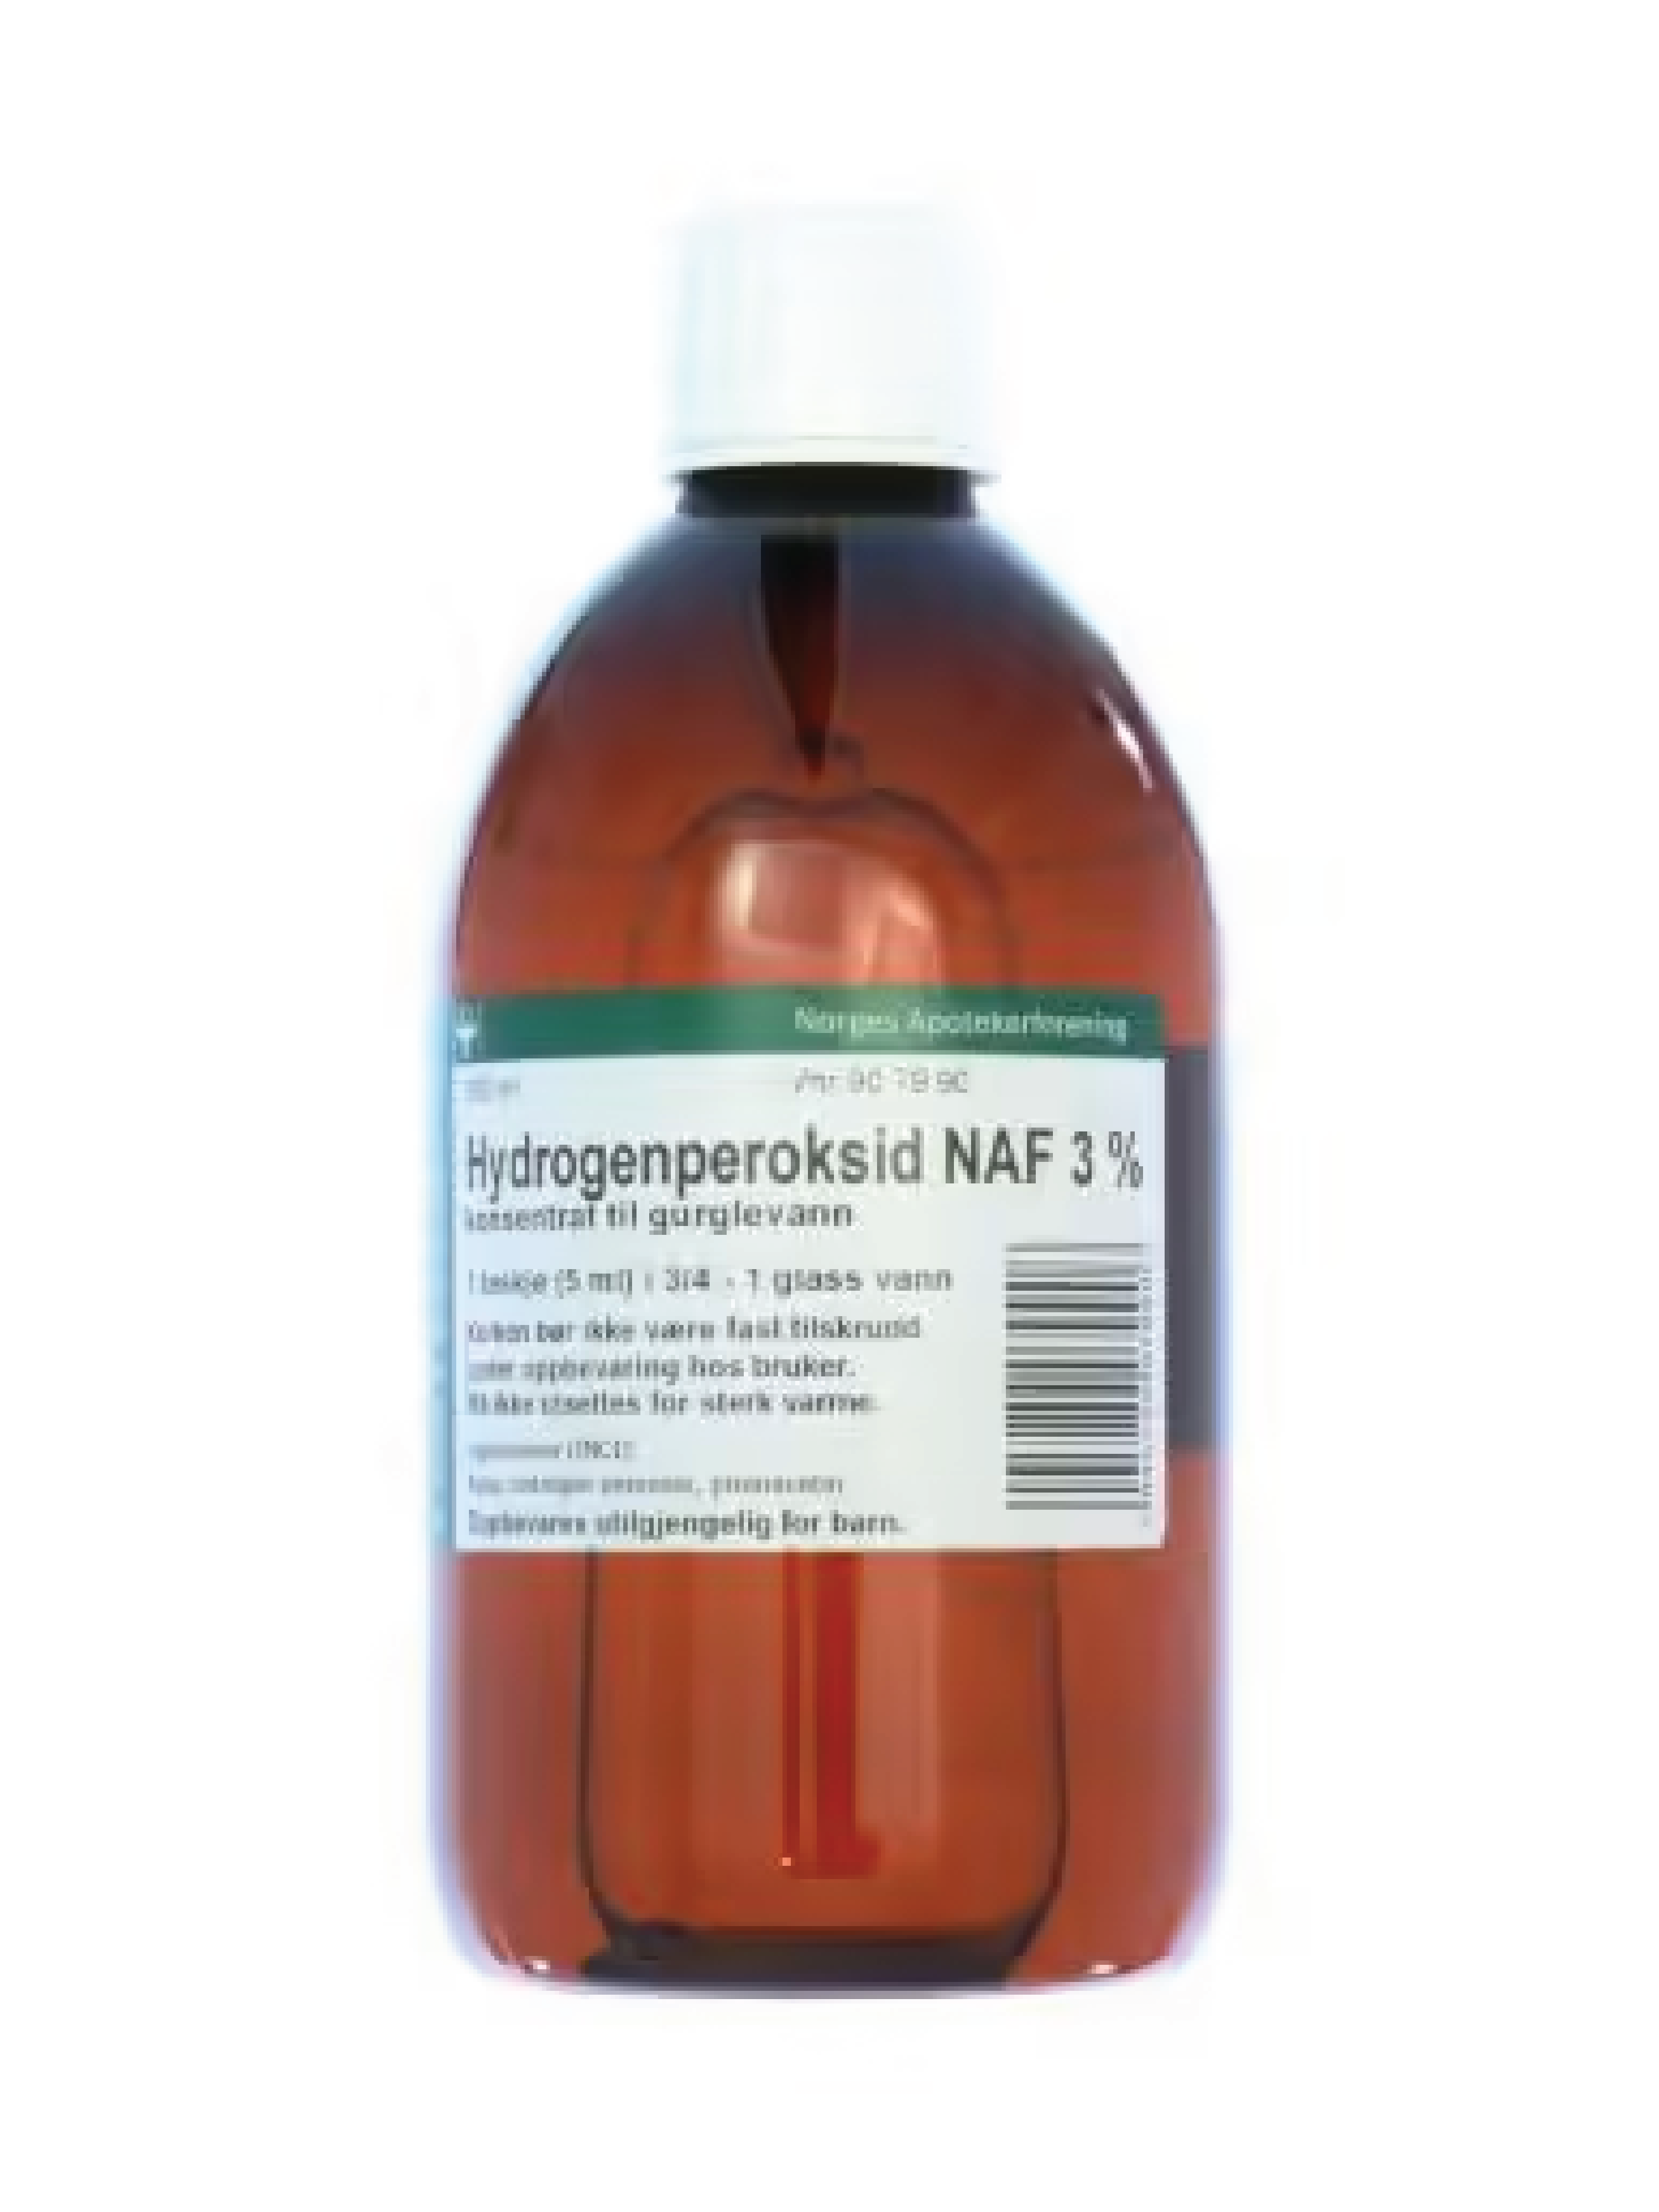 NAF Hydrogenperoksid NAF 3% konsentrat til gurglevann, 500 ml